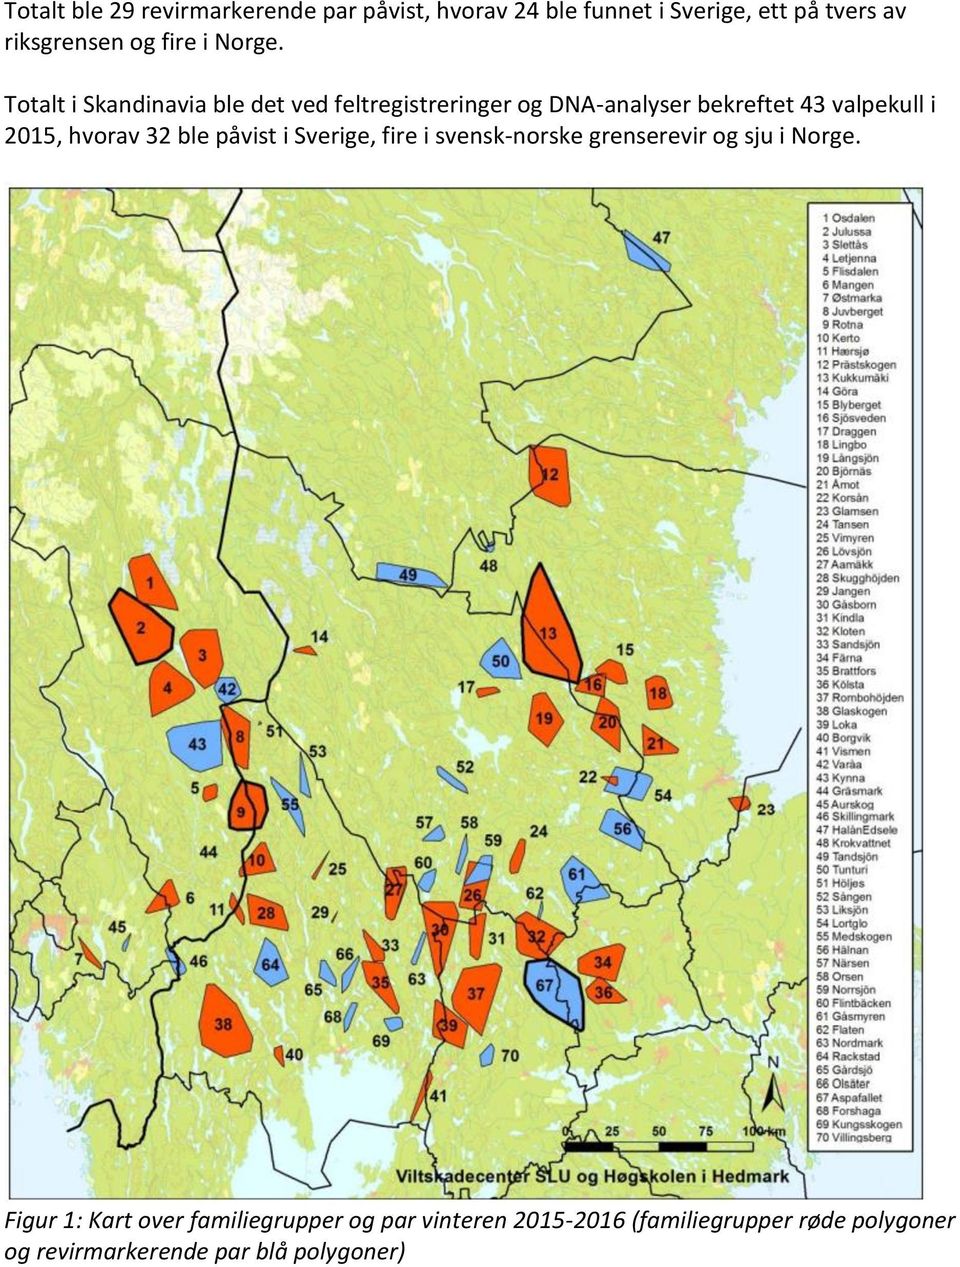 Totalt i Skandinavia ble det ved feltregistreringer og DNA-analyser bekreftet 43 valpekull i 2015, hvorav